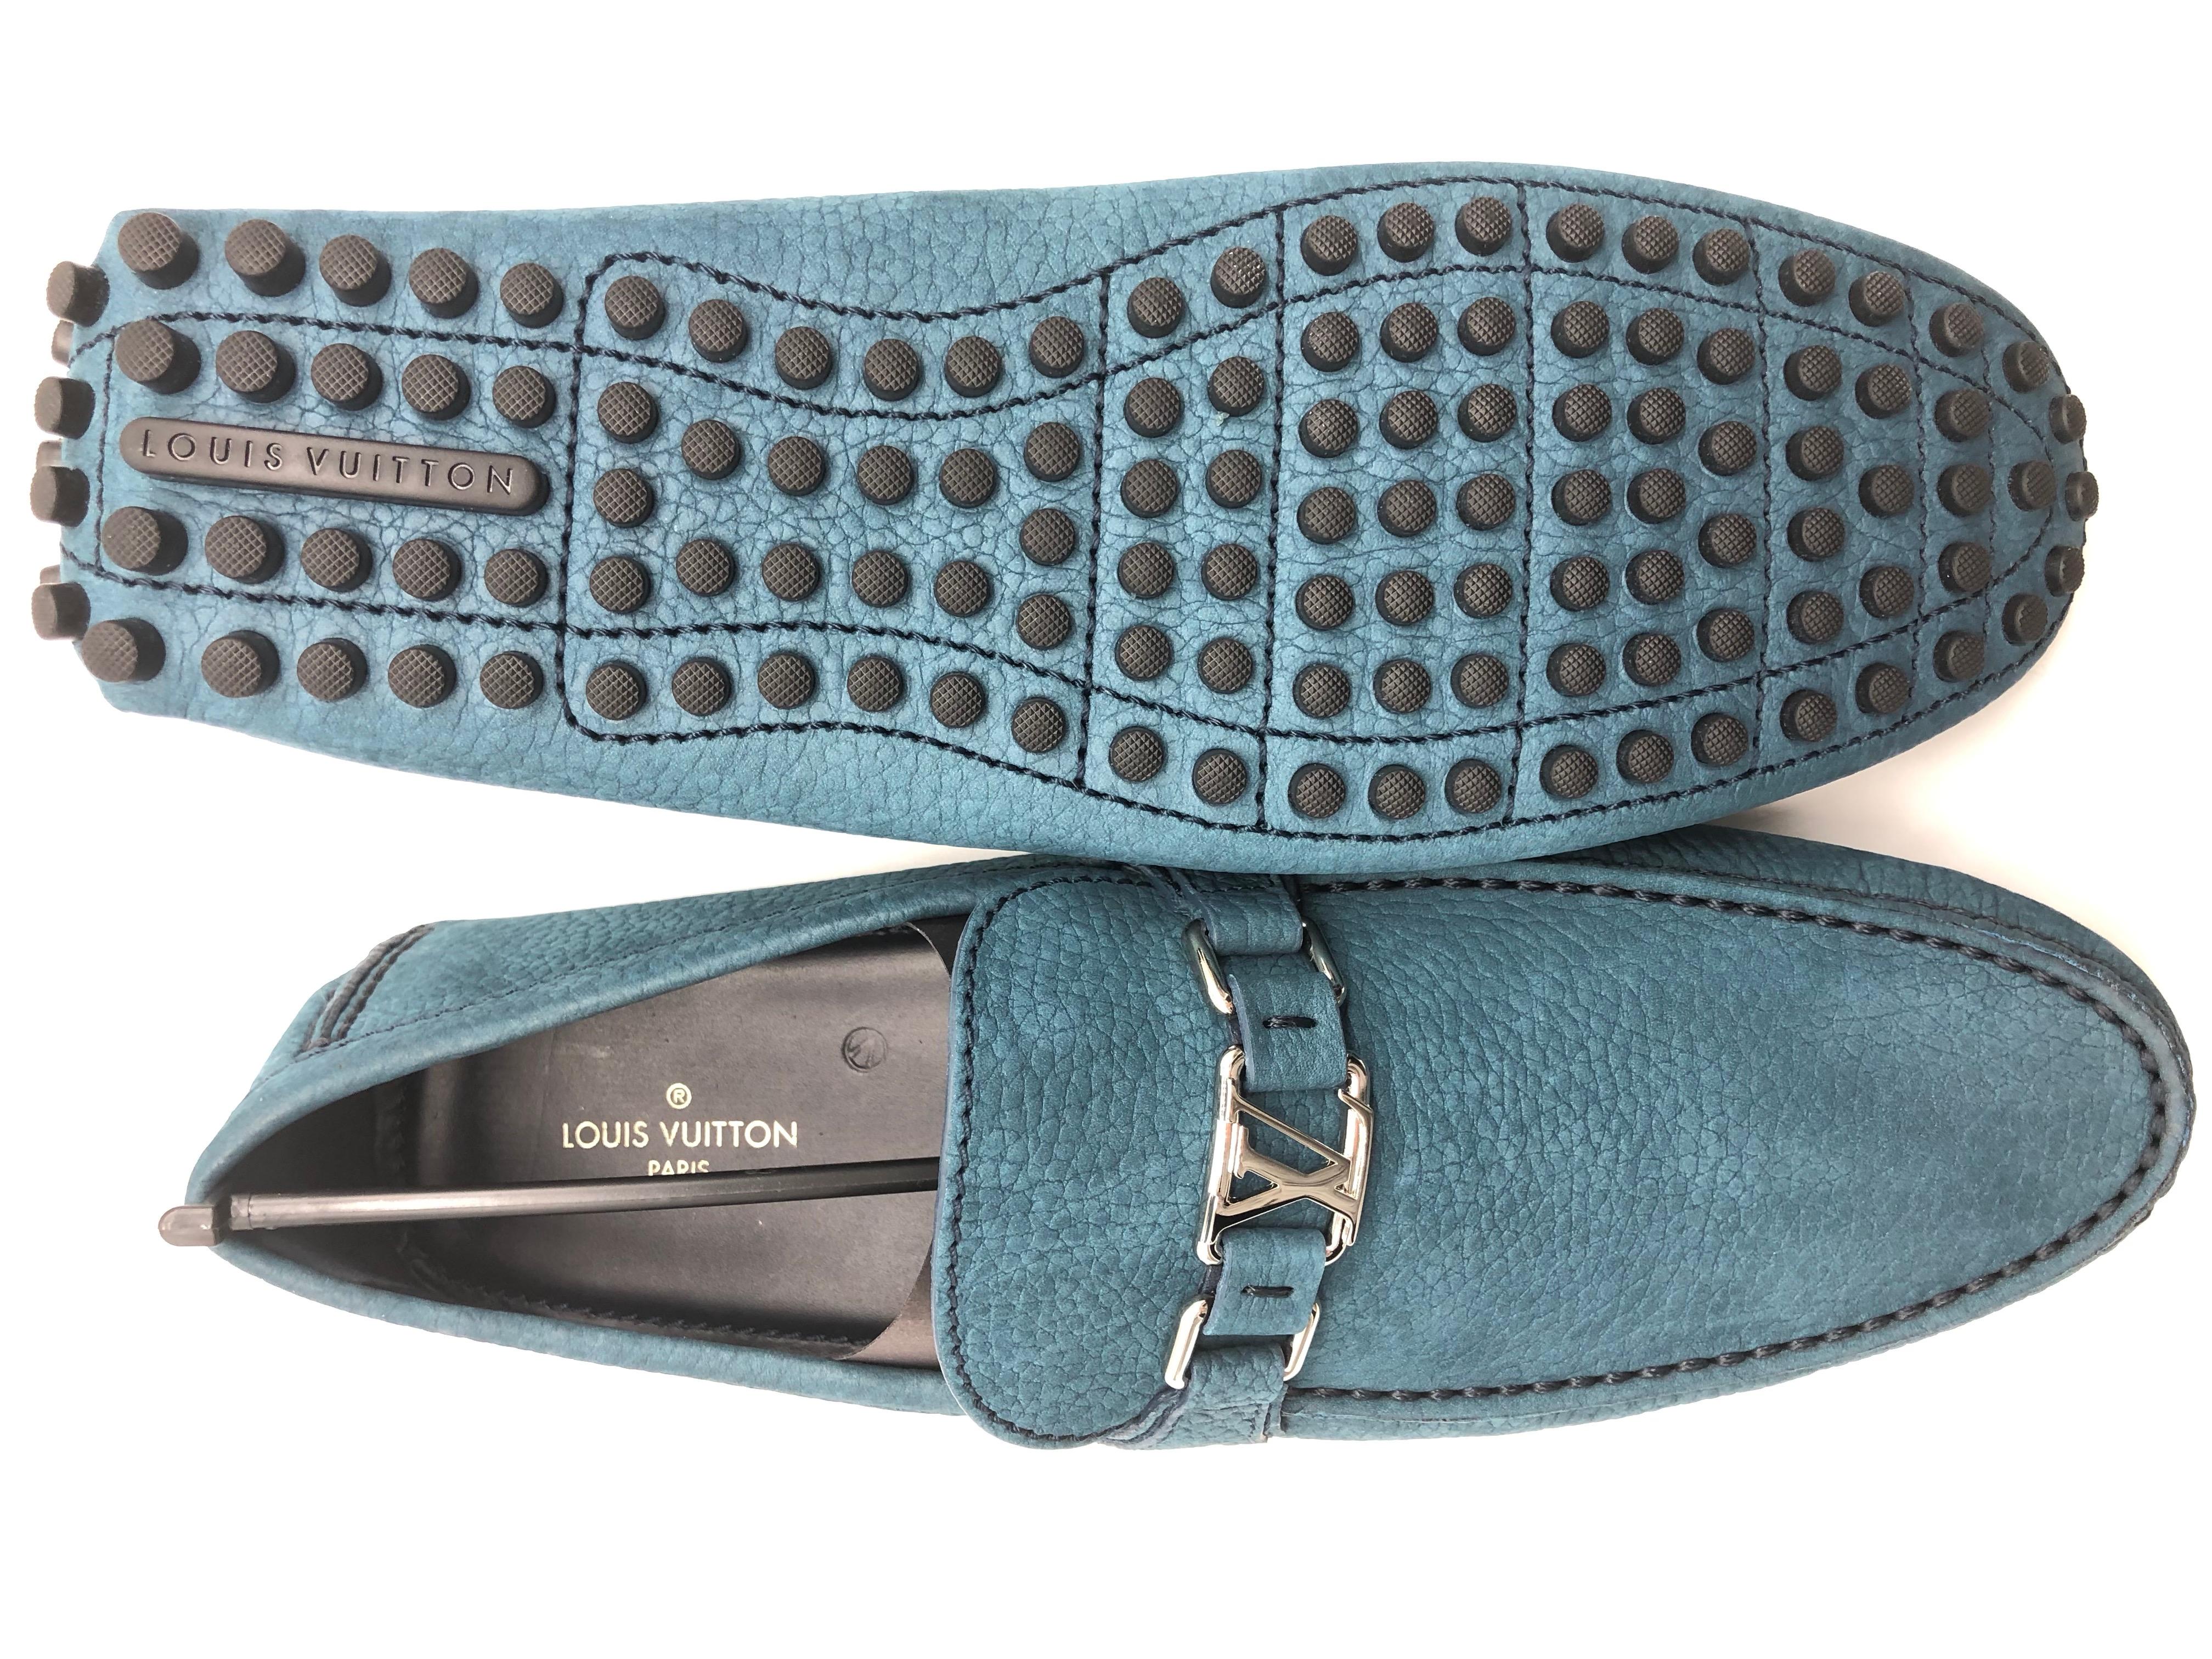 Women's or Men's Louis Vuitton men Loafers in blue suede // Model: Hockenheim // Size: 10 // New